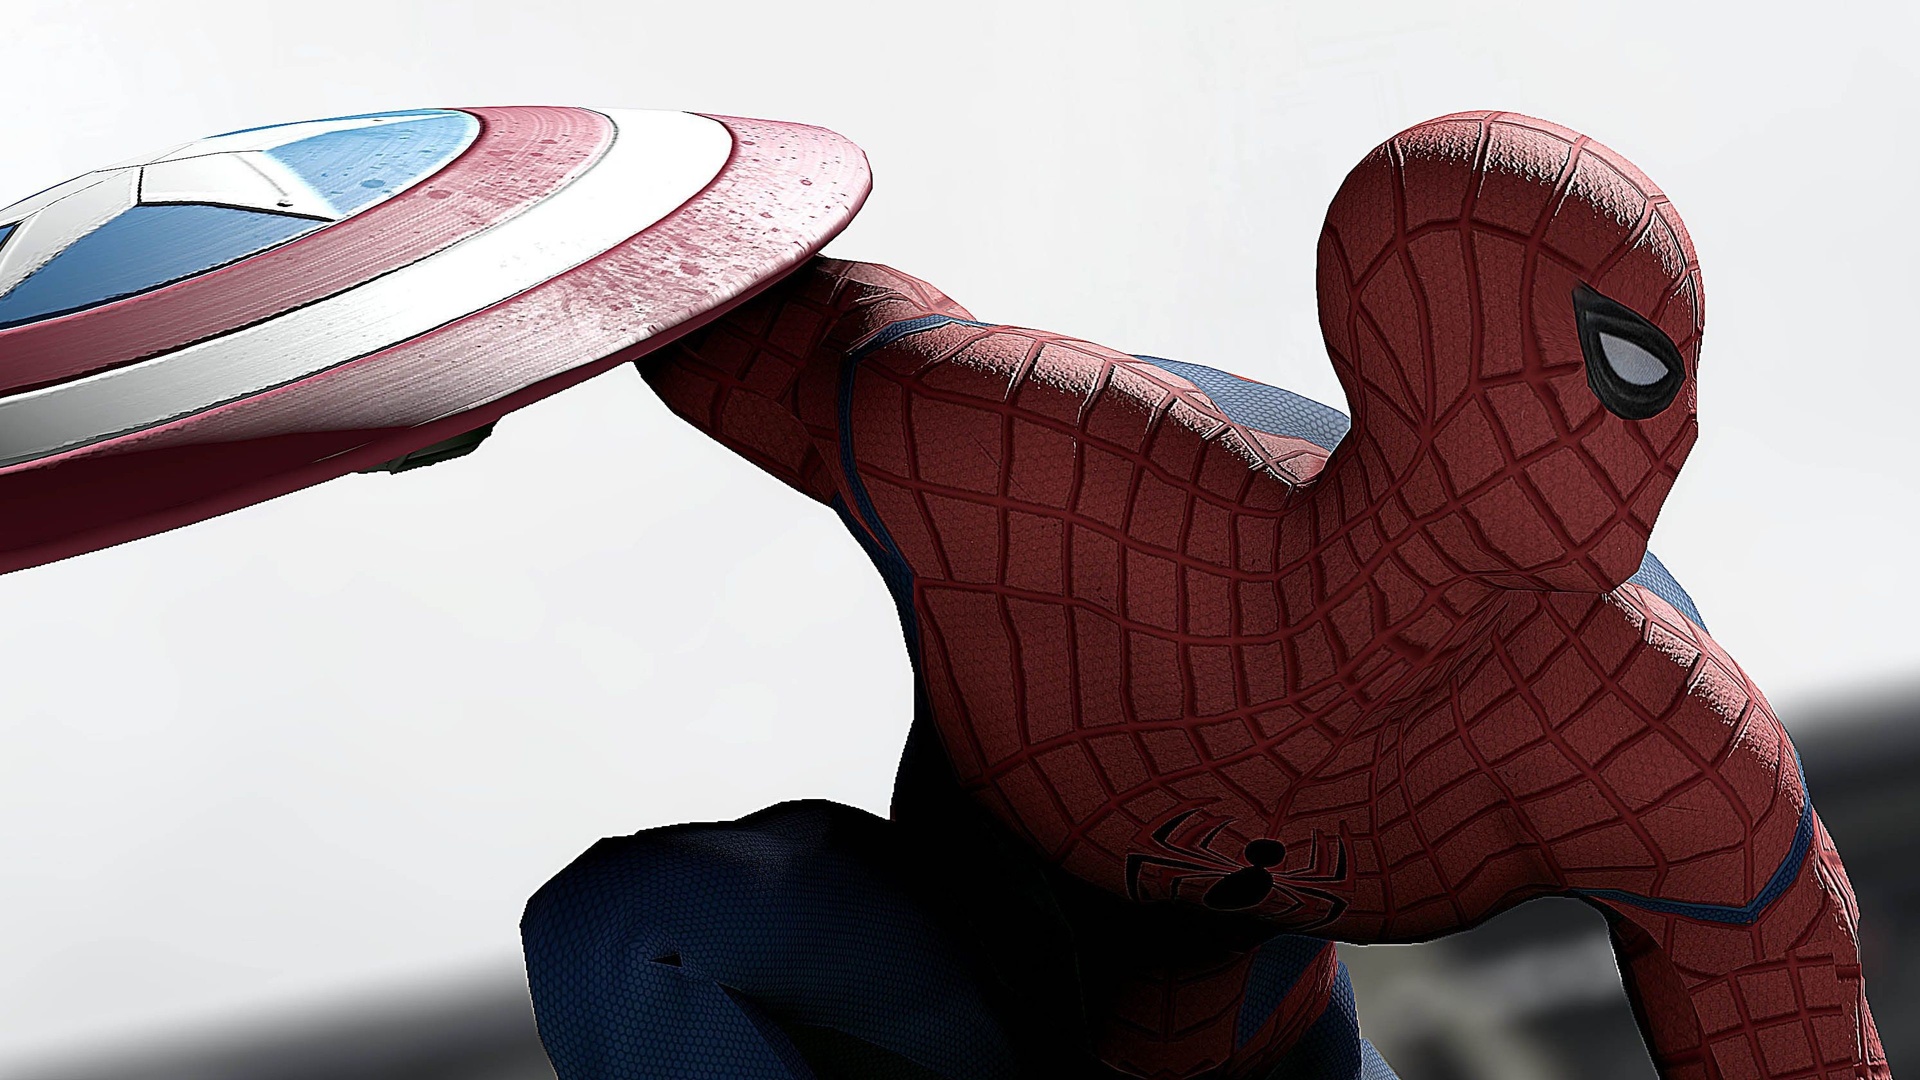 The avengers - Spiderman - bouclier captain America.jpg